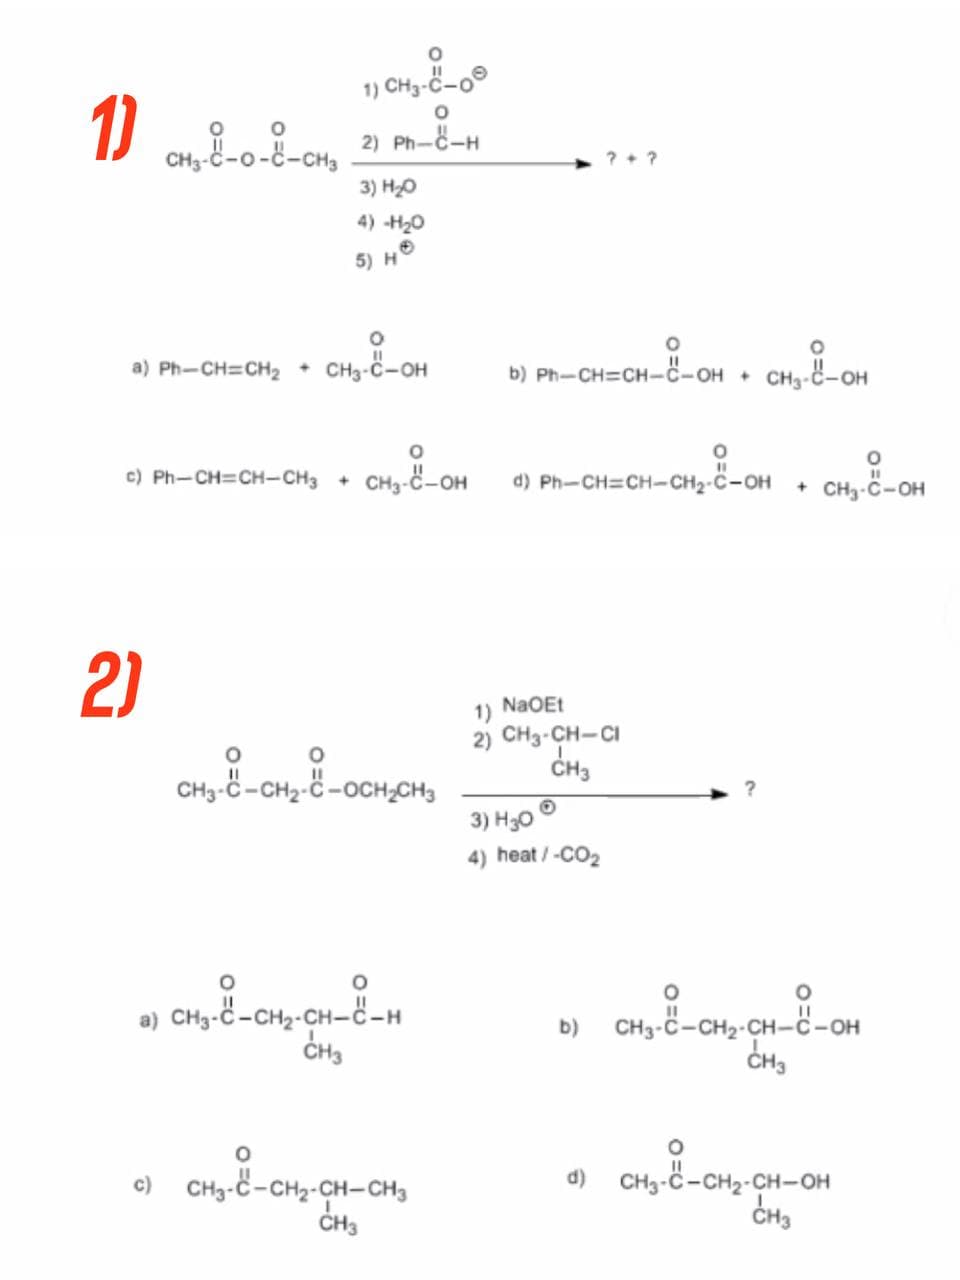 1) CH3-C-0
1) CH4₂-8-0-8-CH₂ 21 PM-8-4
2) PHÁCH
3) H₂O
4) -H₂0
5) H
O
a) Ph-CH=CH₂ + CH3-C-OH
O
©) Ph—CH=CH-CH3 +
CH3-C-OH d) Ph-CH=CH-CH₂-C-OH
1) NaOEt
2) CH3-CH-CI
CH3
3) H30
4) heat / -CO₂
b)
d) CH3-C-CH₂-CH-OH
CH3
2)
CH₂-8-CH₂-8-OCH₂CH₂
O
a) CHO-C-CH-CH-CH
CH3
O
c)
CH3-C-CH2-CH-CH3
CH3
??
O
O
b) Ph-CH=CH-C-OH + CH3-C-OH
-CH₂-8-OH + CH₂-8-OH
CH3-C-CH₂-CH-8-OH
CH3